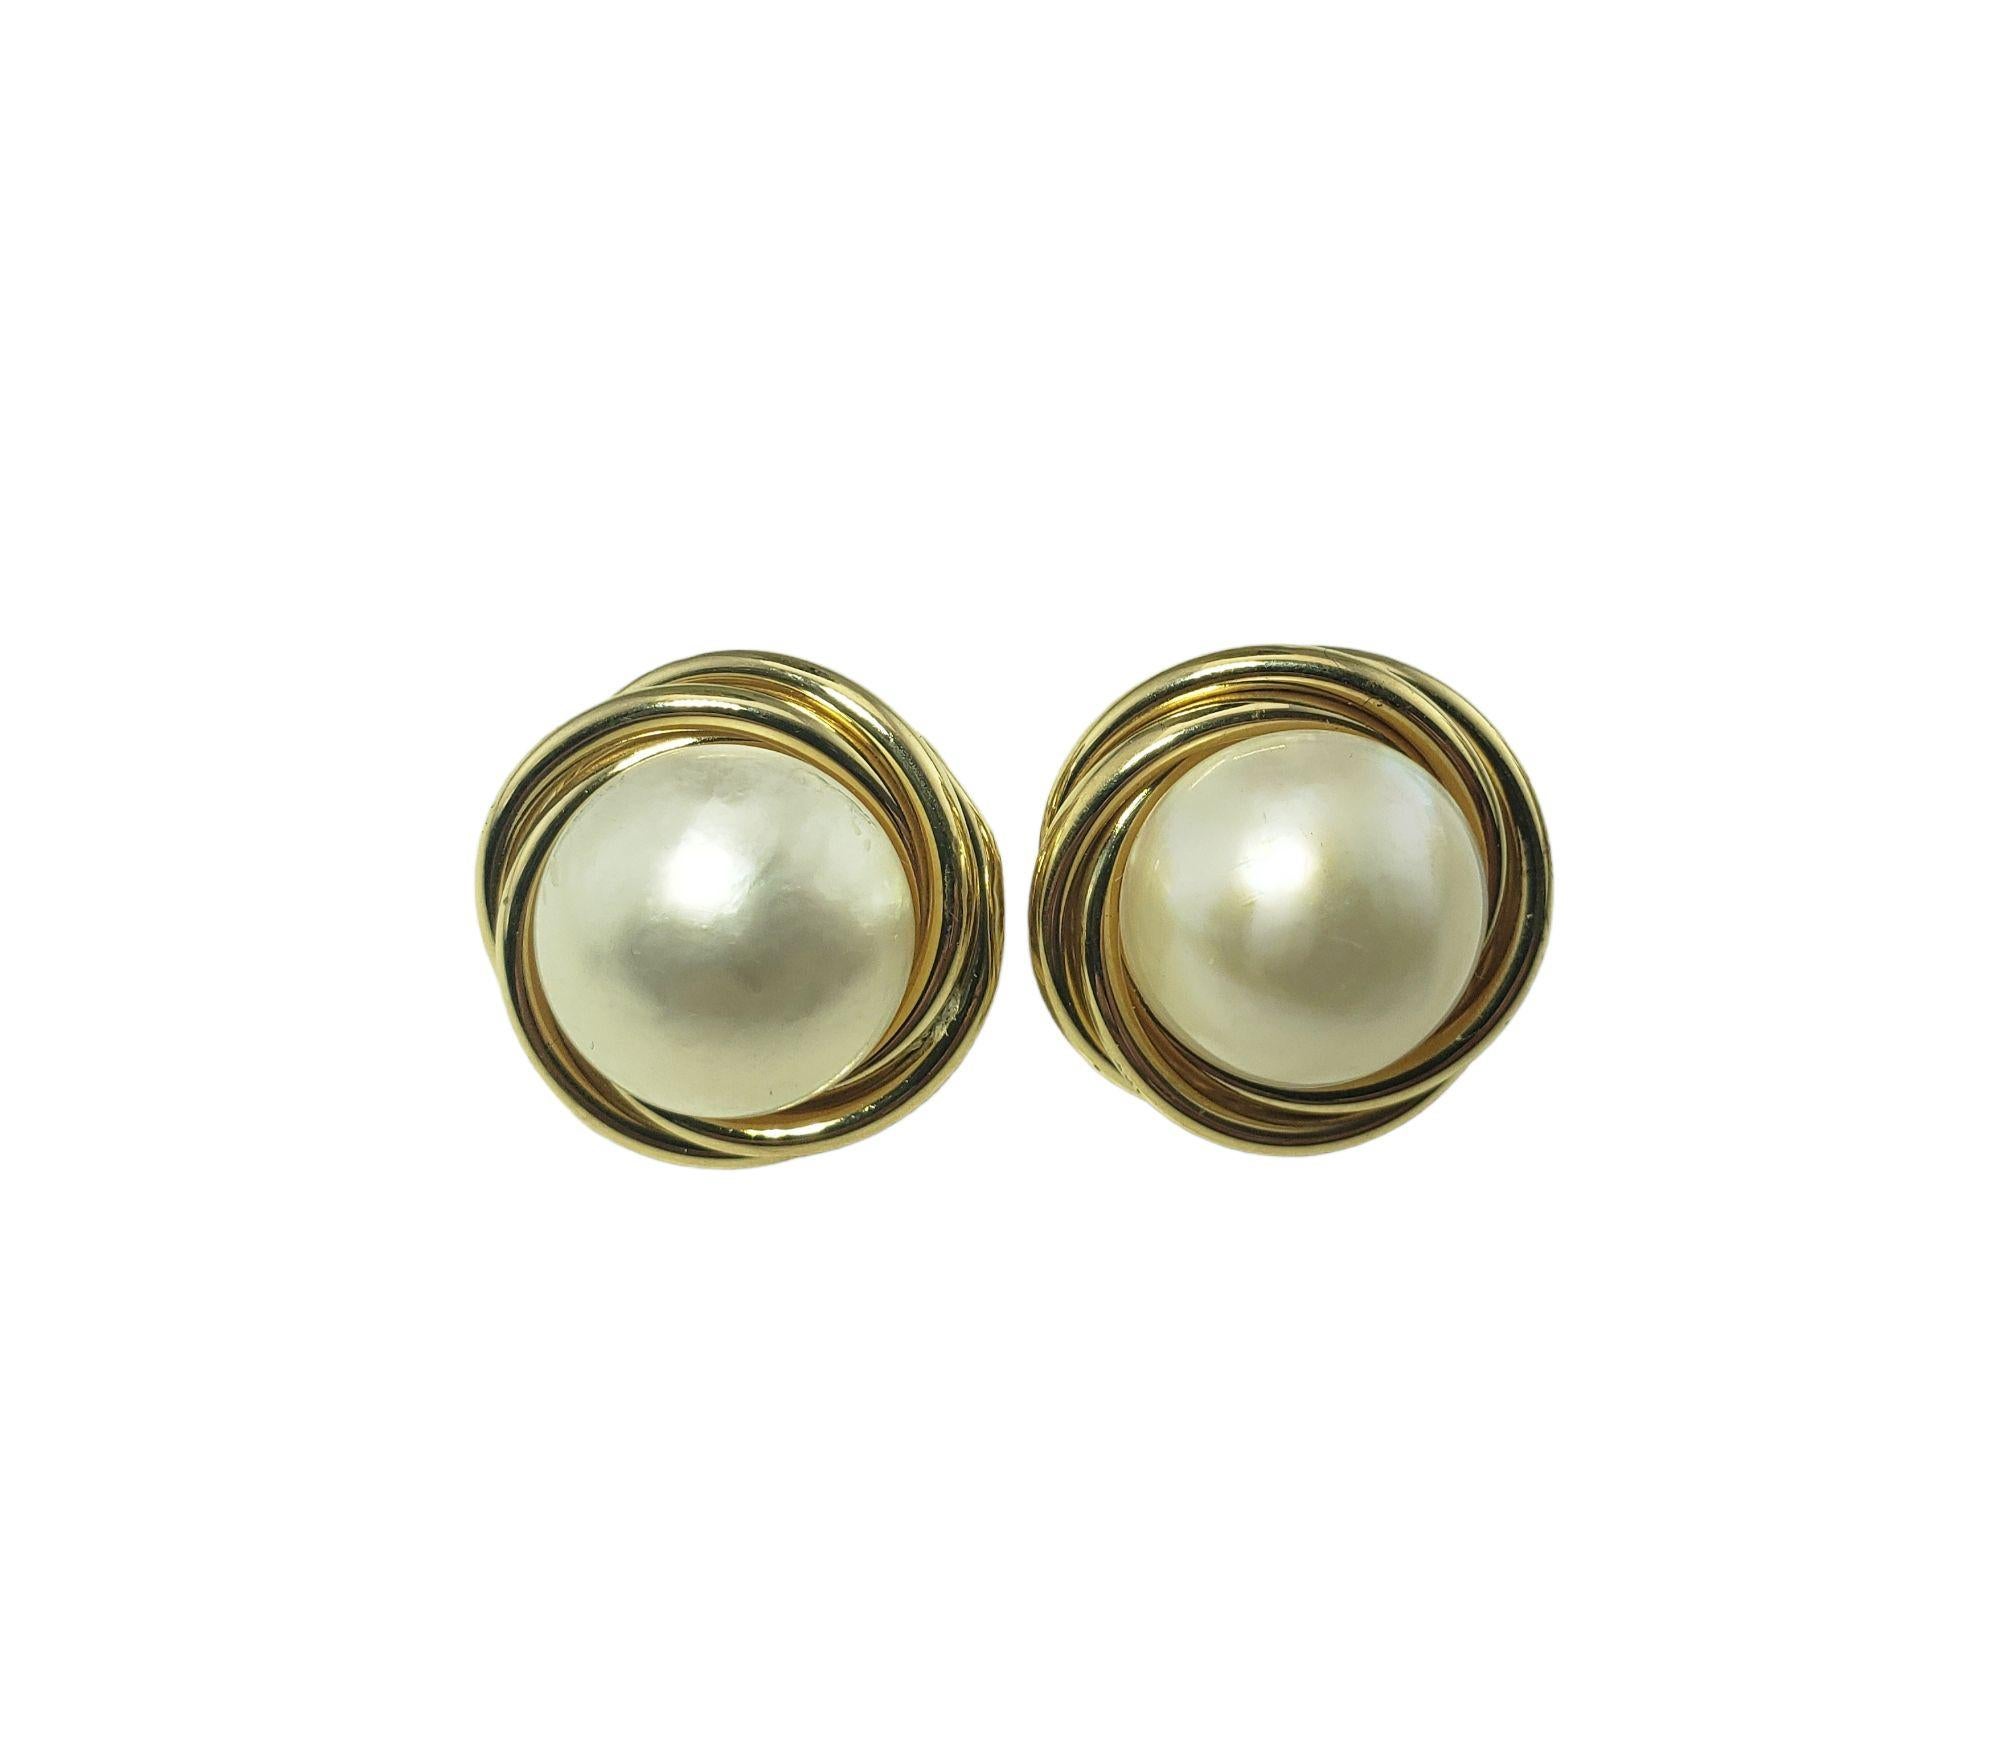 14 karat gold pearl earrings